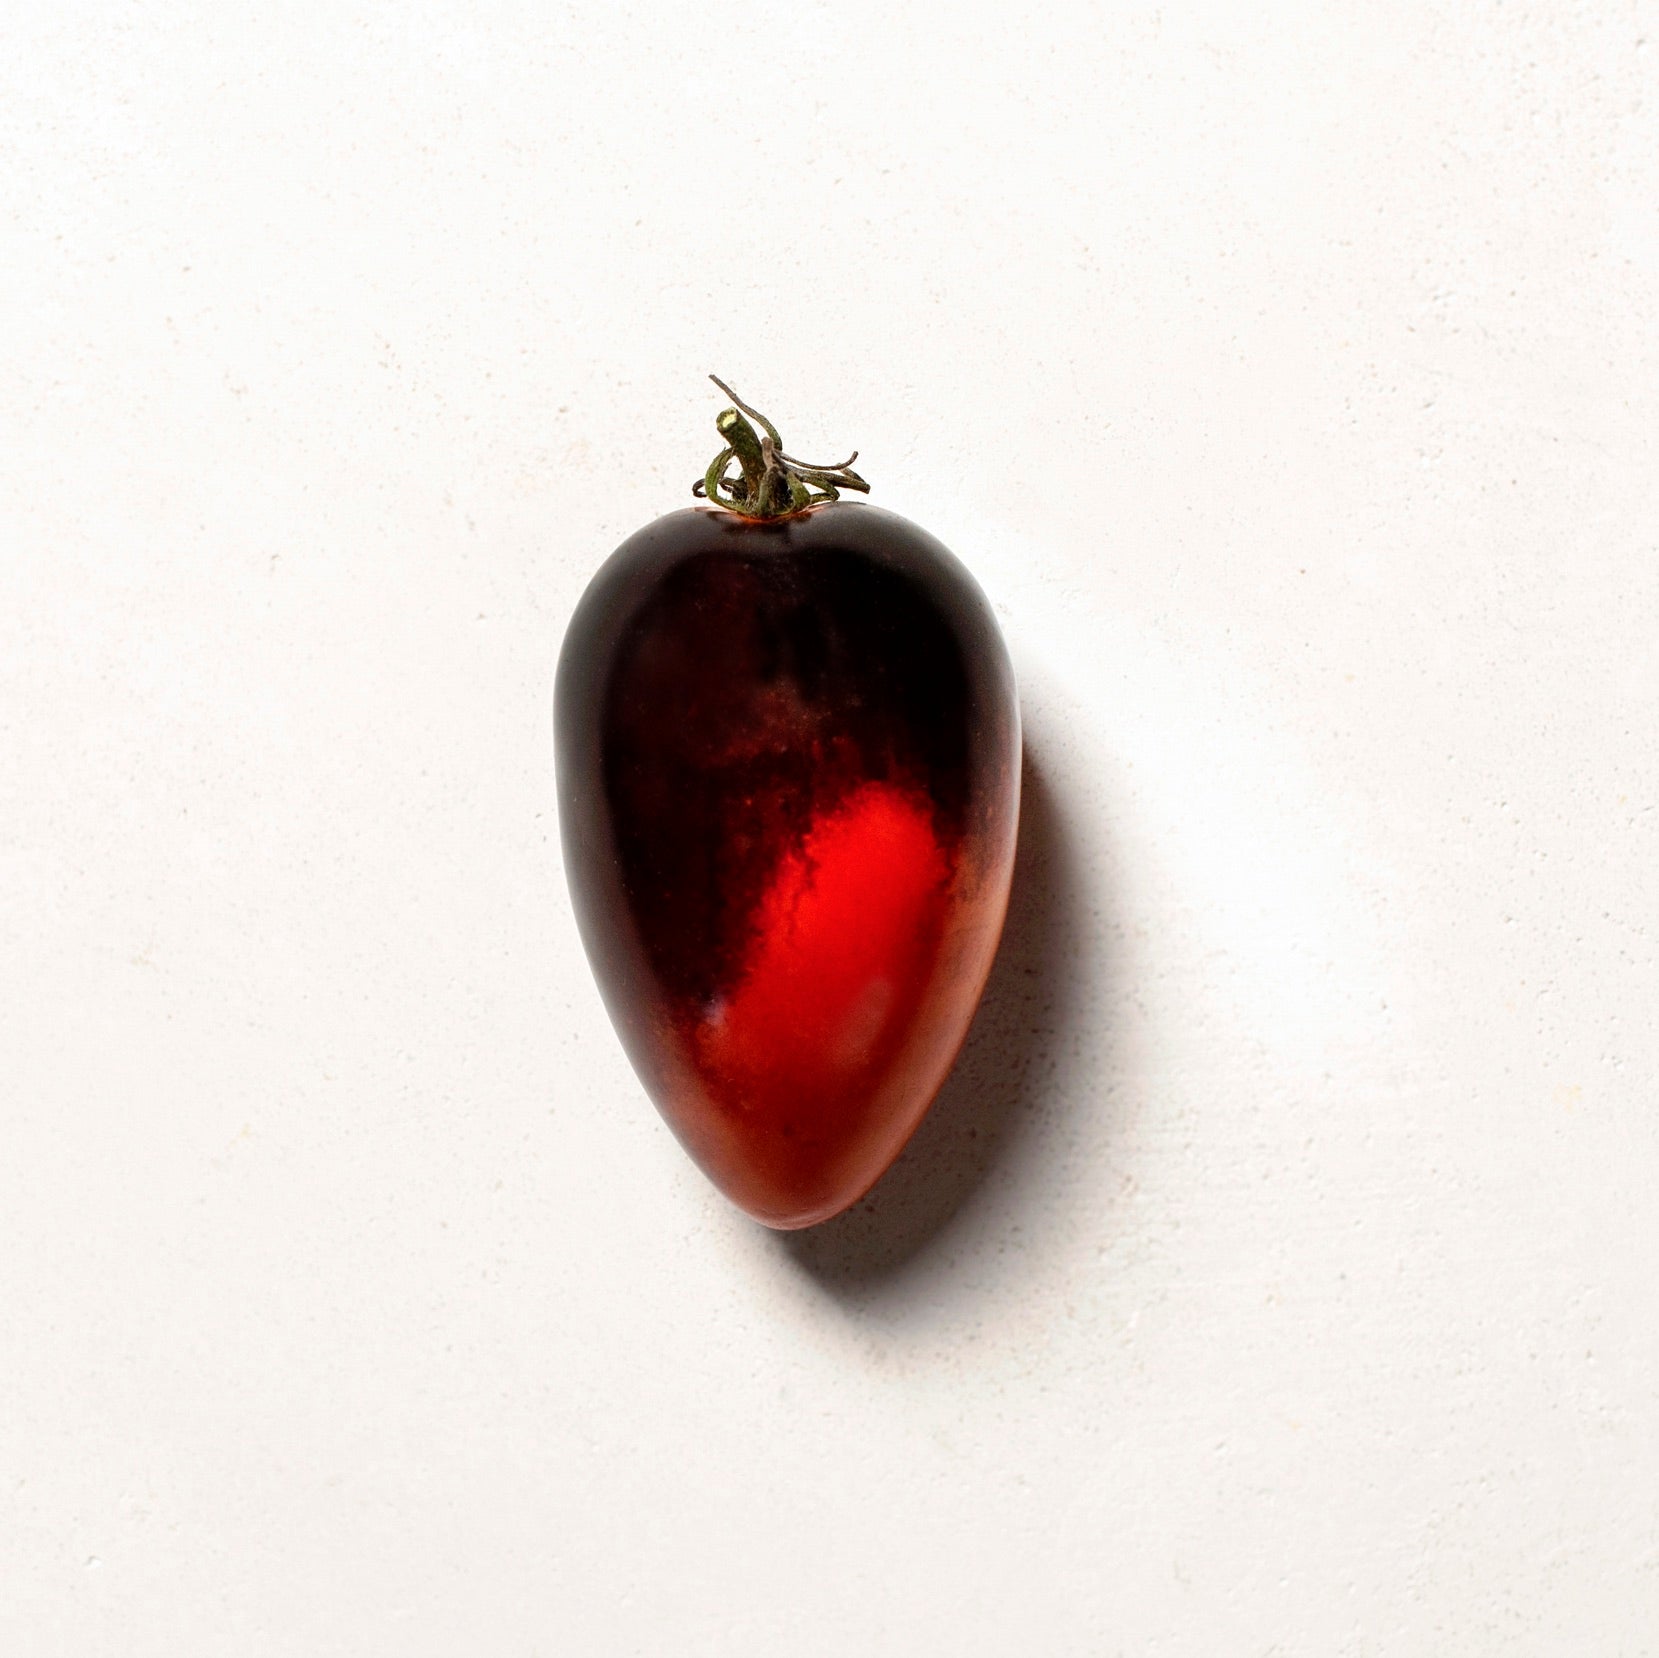 Midnight Roma Tomato Seeds